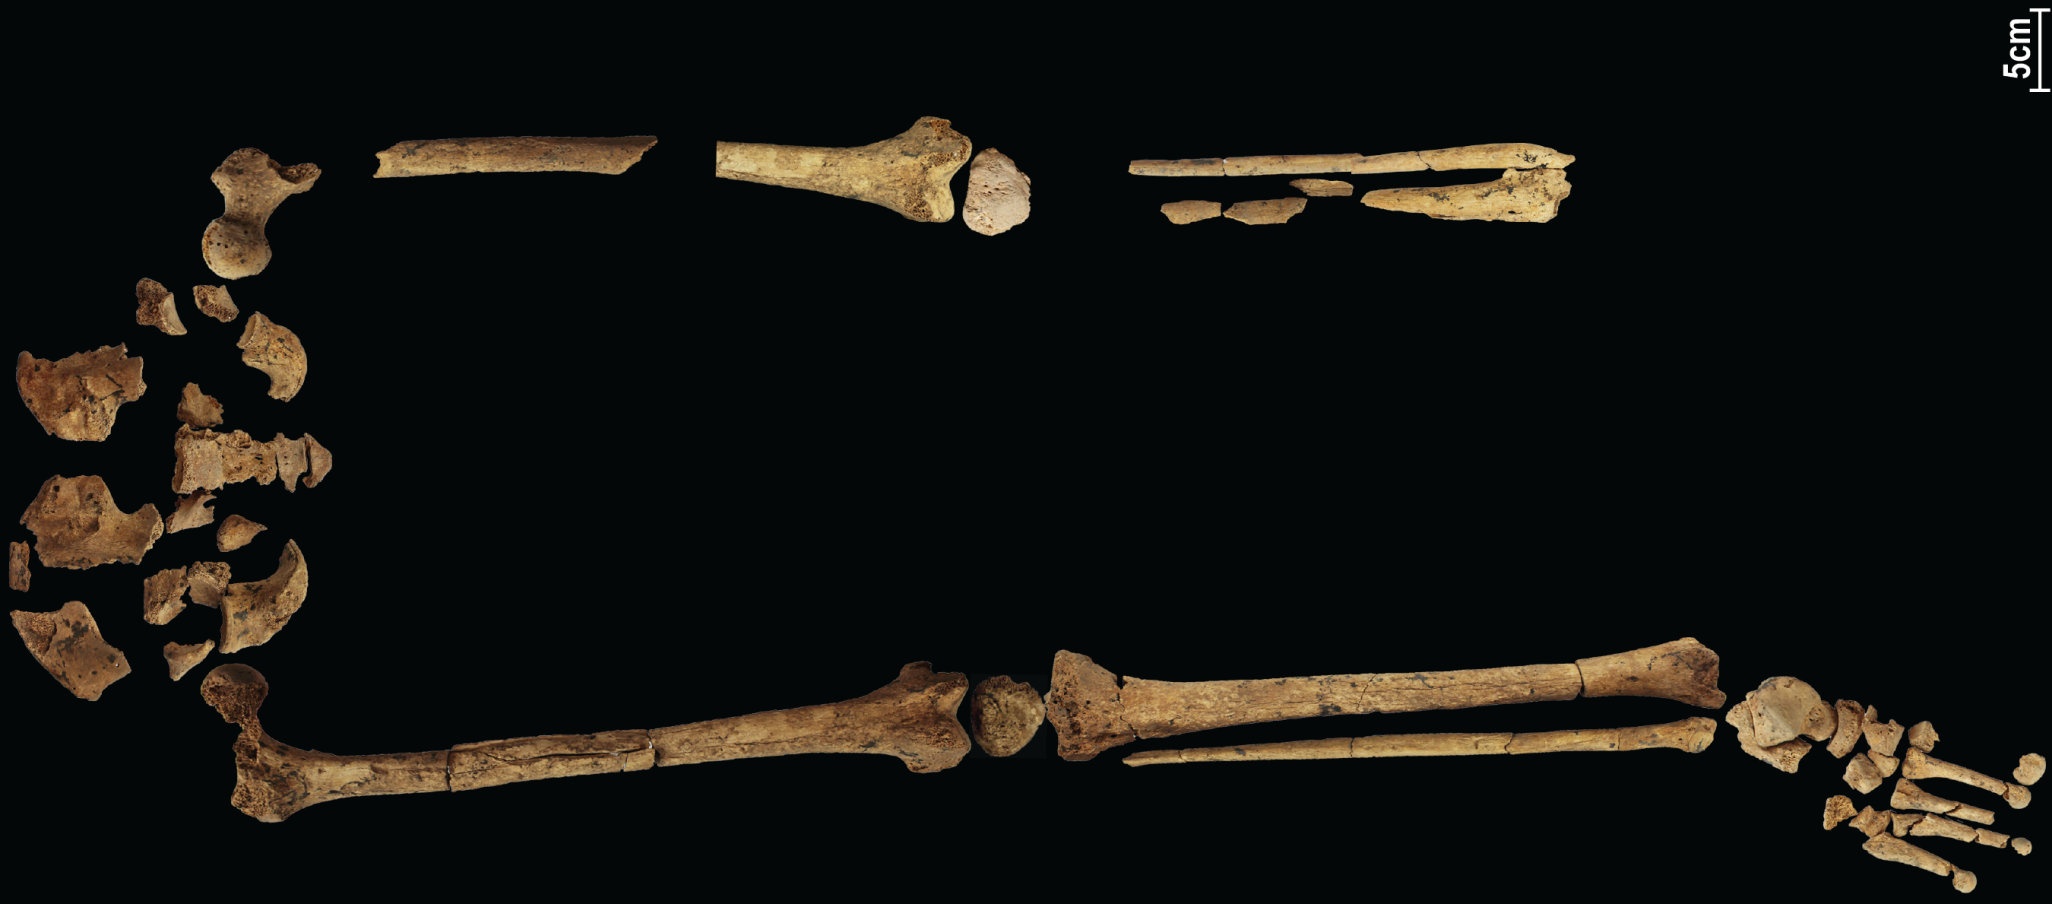 一具具有 31,000 年曆史的骨骼展示了已知最早的複雜手術，可以改寫歷史！ 3